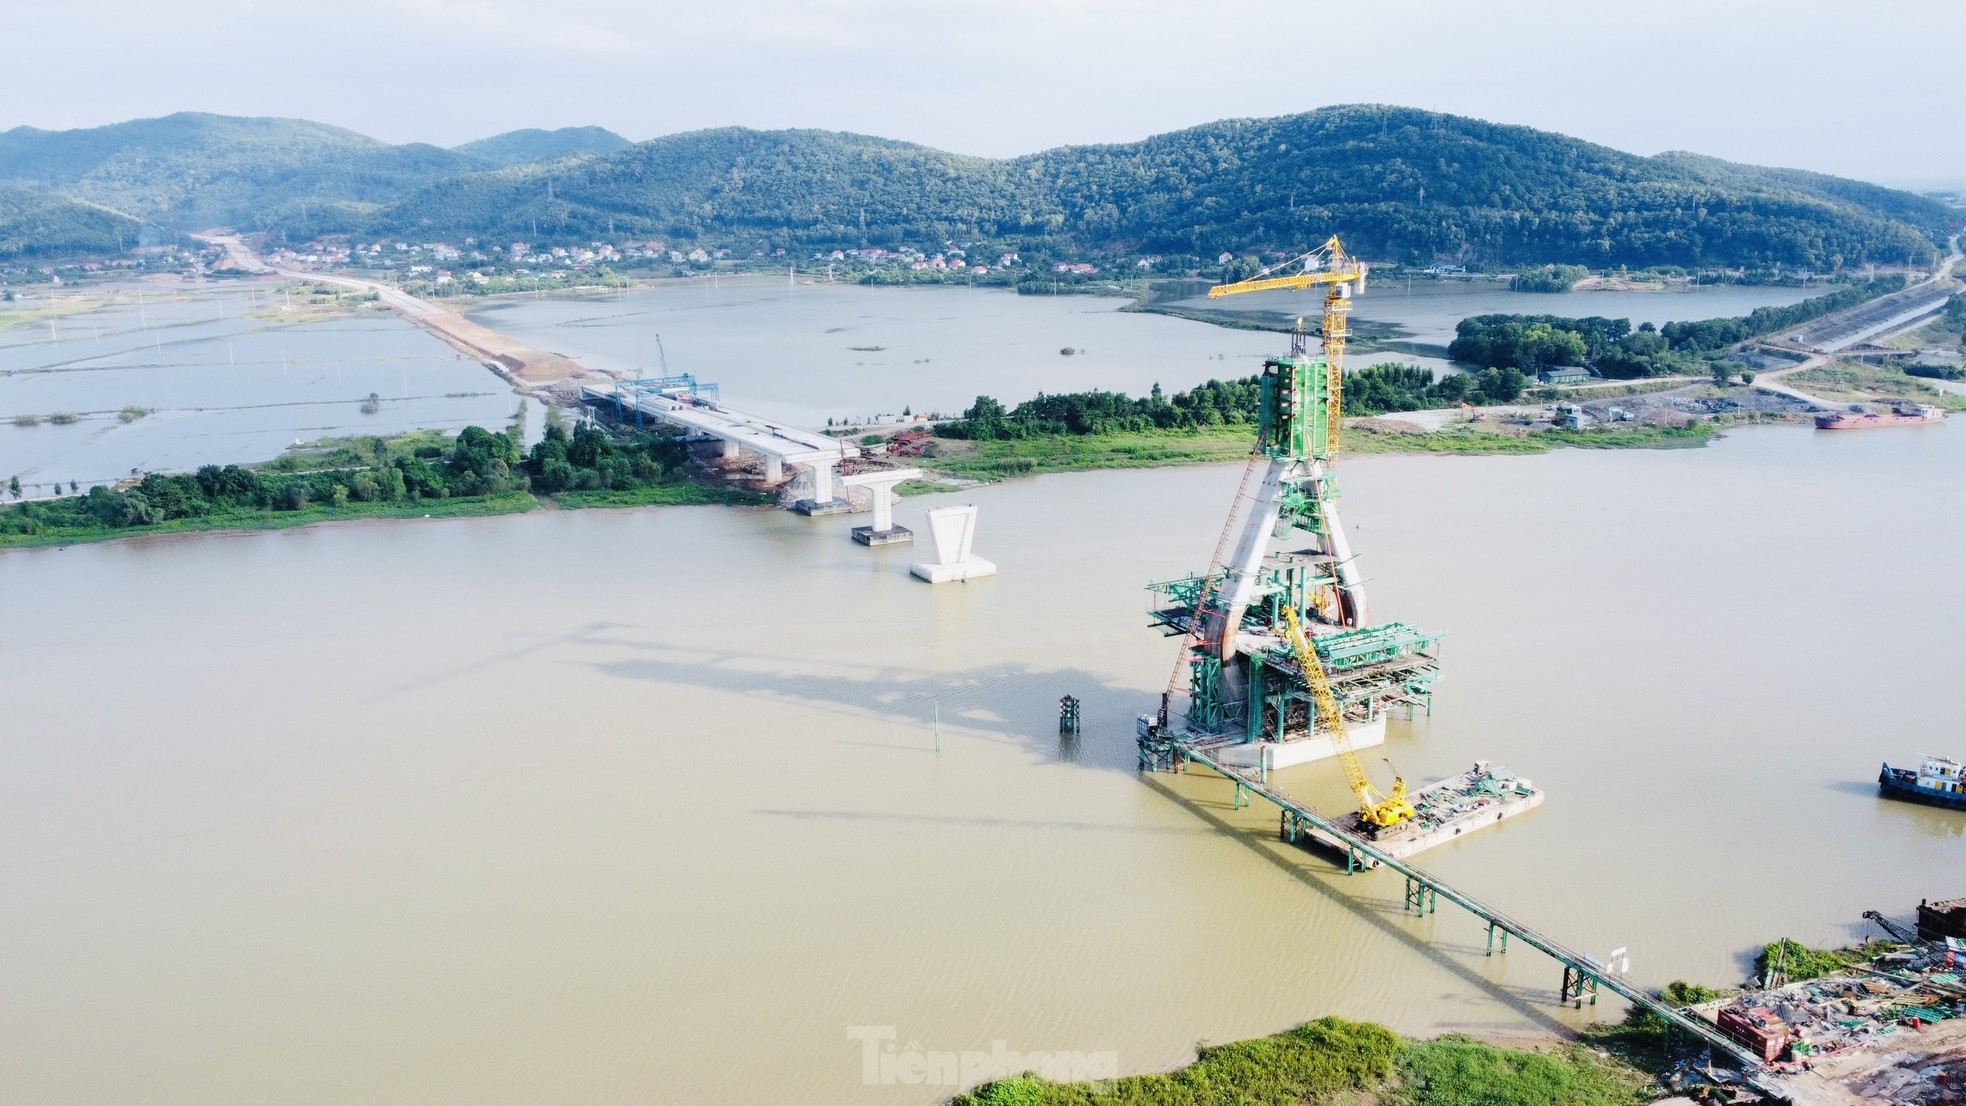 Cầu dây văng trị giá gần 1.500 tỷ đồng nối Bắc Giang - Hải Dương sắp thành hình - Ảnh 2.